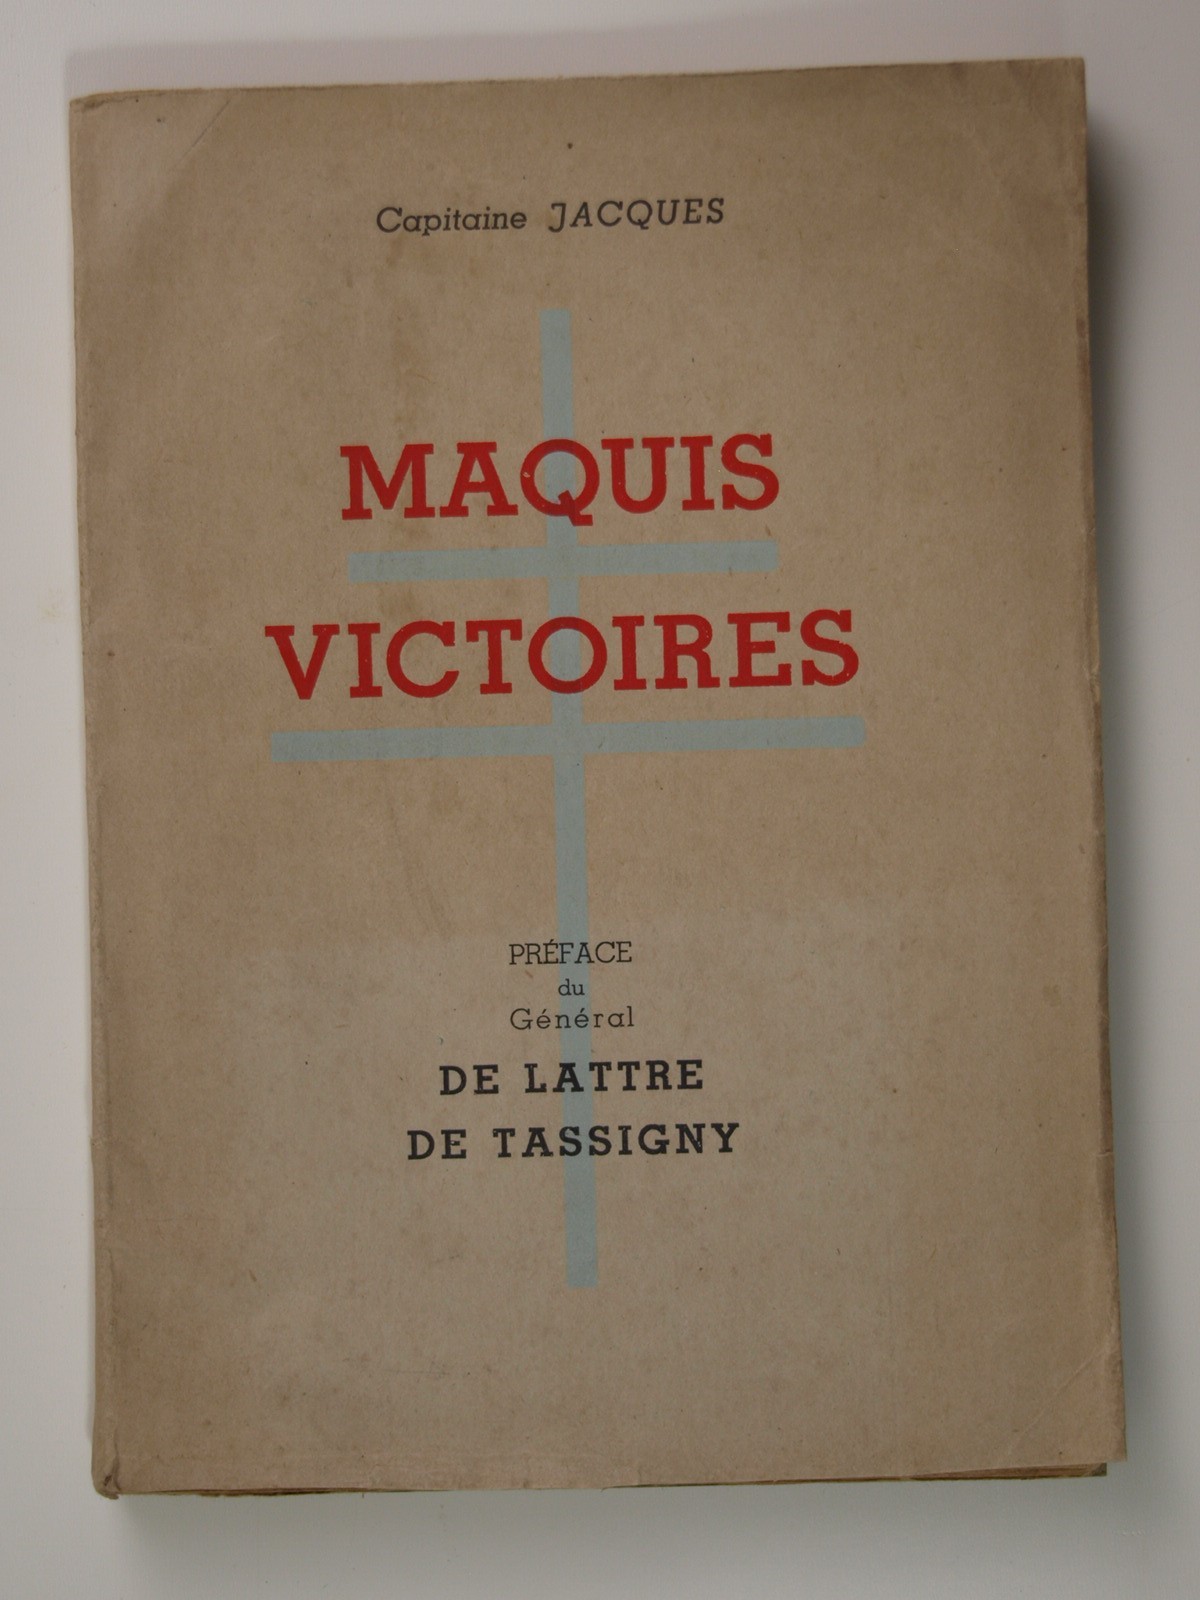 Capitaine Jacques : Maquis victoires